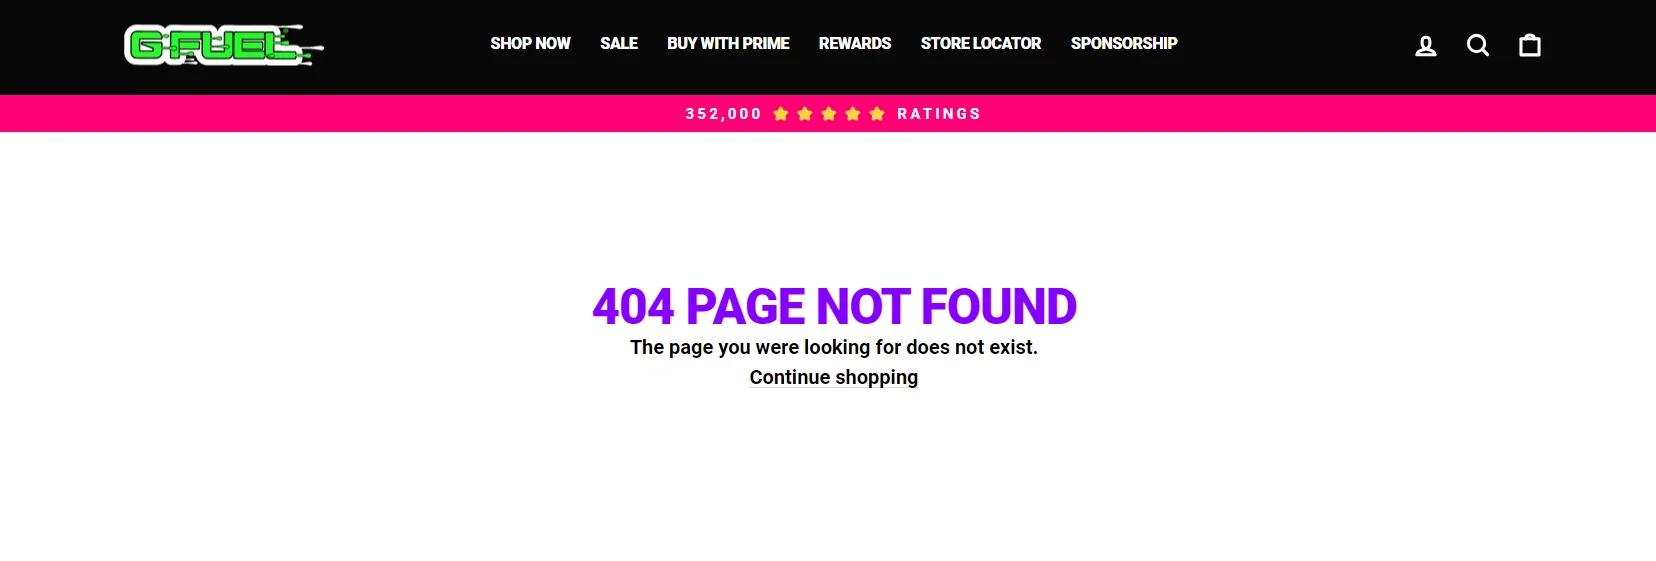 G-Fuel Web サイトに「404 PAGE NOT FOUND 探していたページは存在しません。」というエラー メッセージが表示されました。